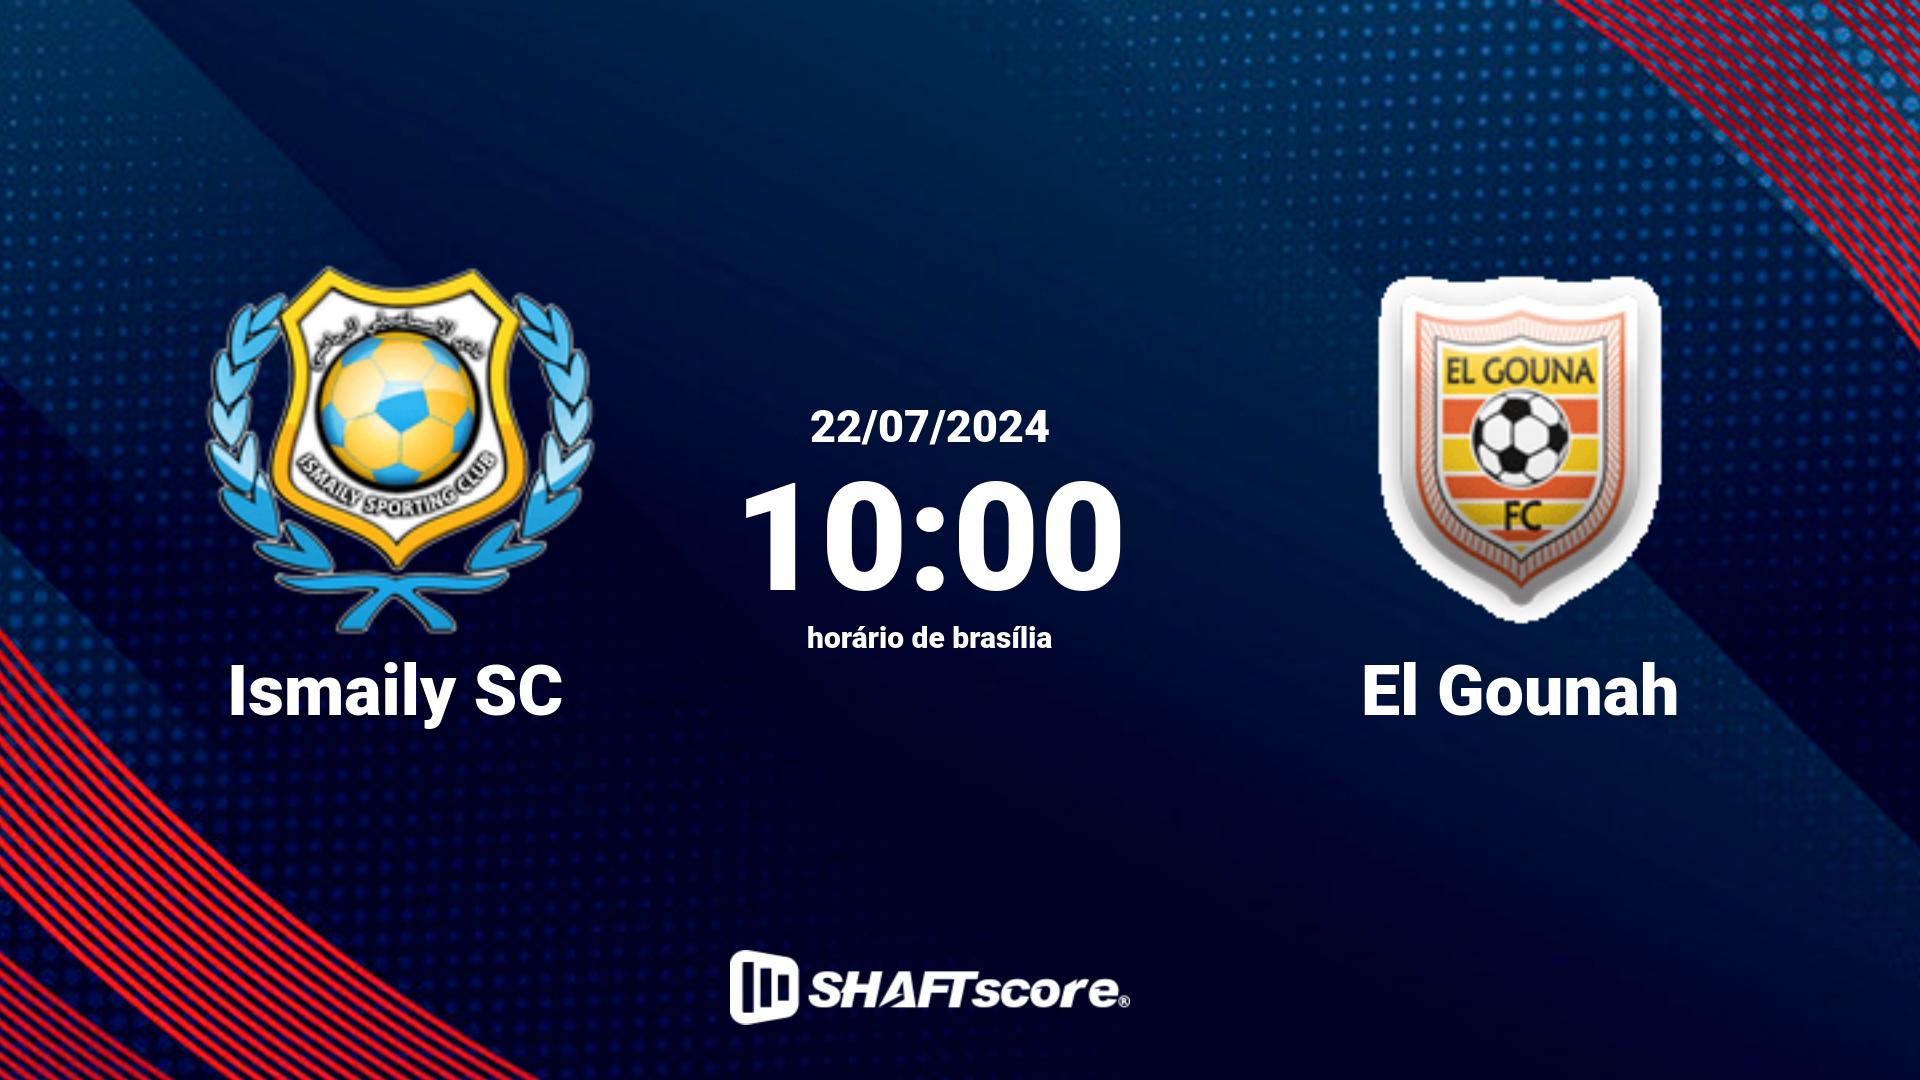 Estatísticas do jogo Ismaily SC vs El Gounah 22.07 10:00